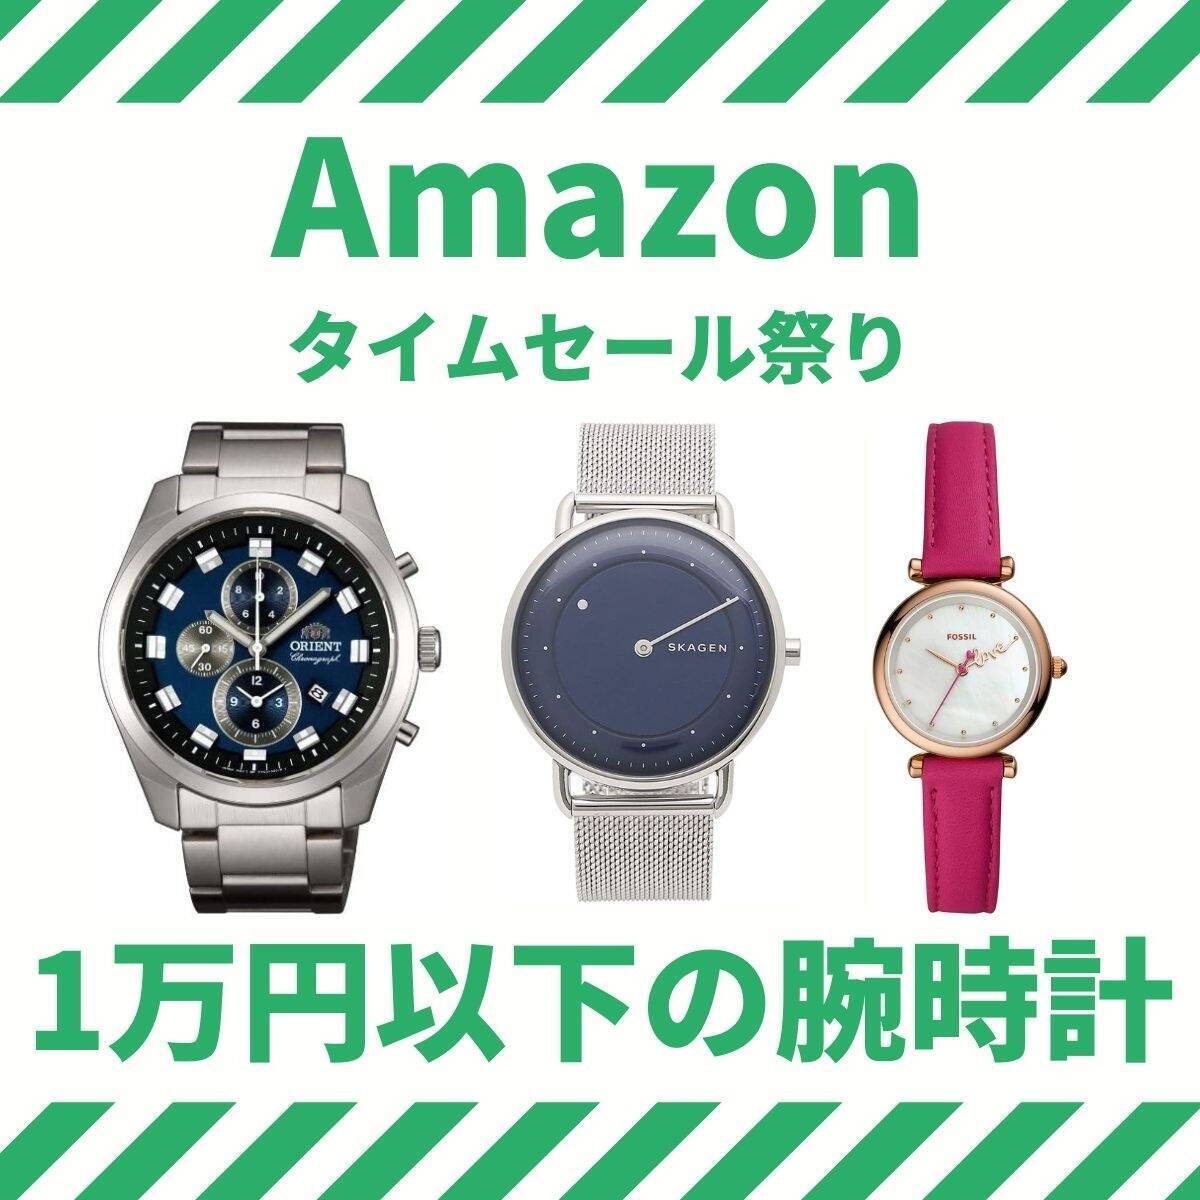 およそ7割値下げの商品も！ 1万円以下の腕時計まとめ【Amazonタイムセール祭り】